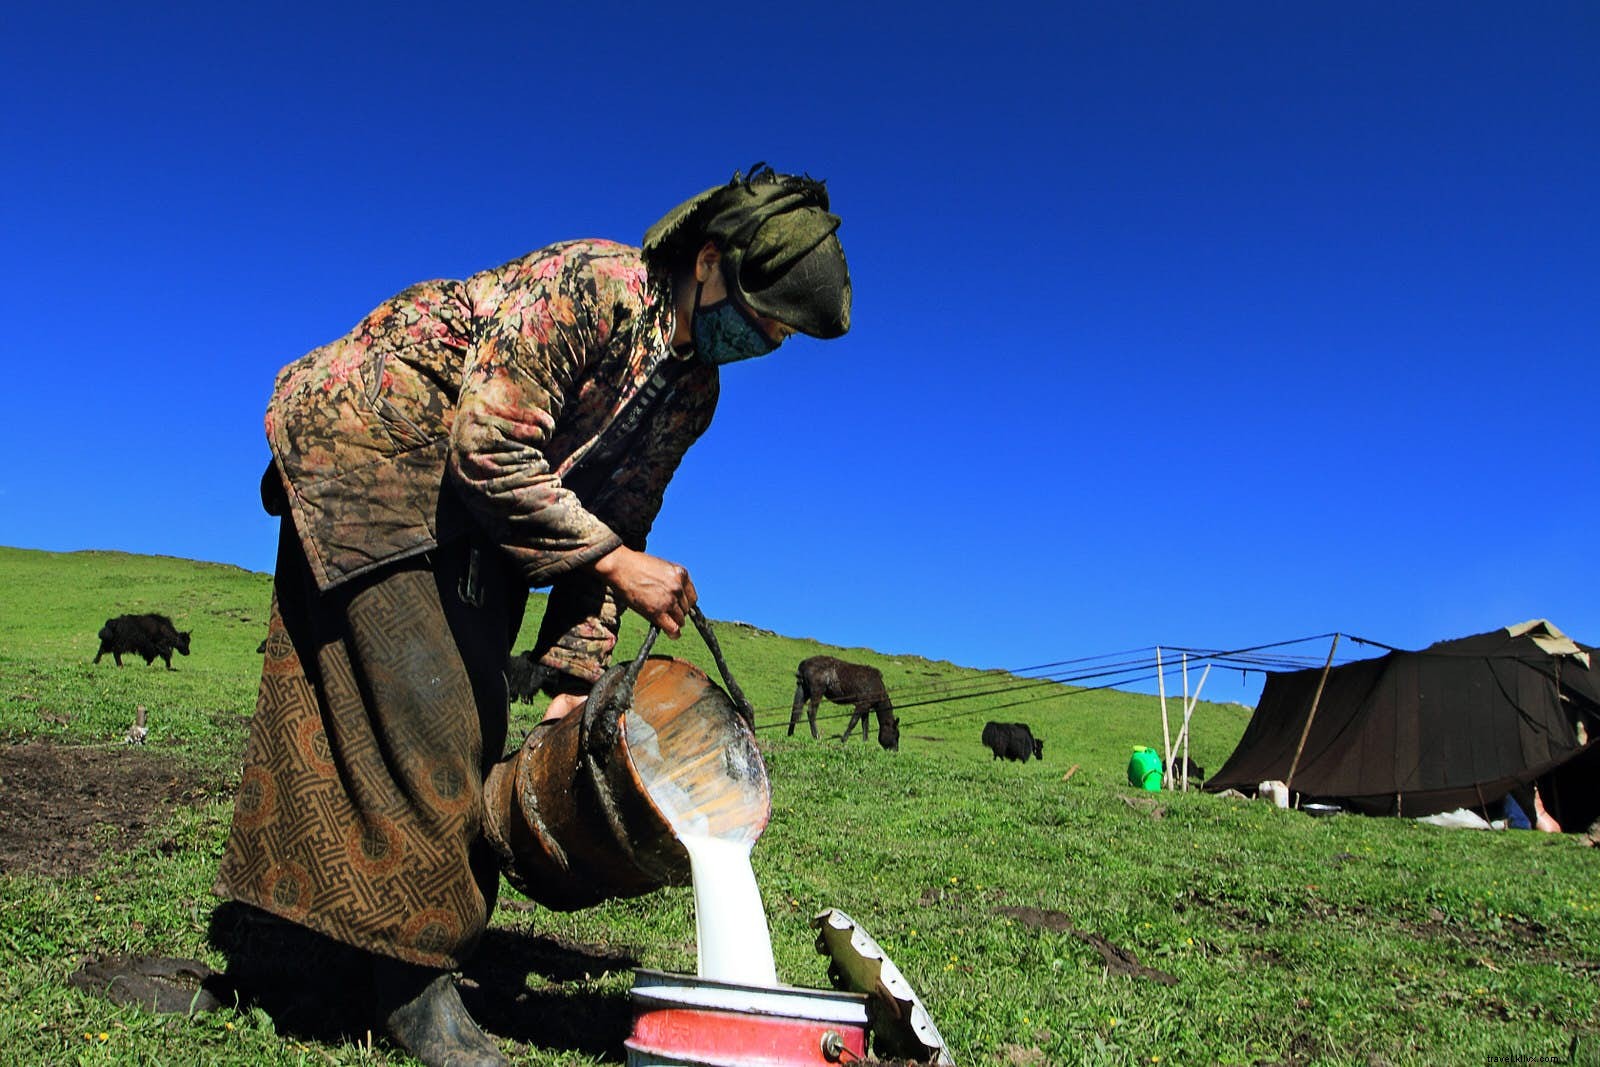 Dormir bajo el pelo de yak:la vida con los nómadas tibetanos de Gansu 